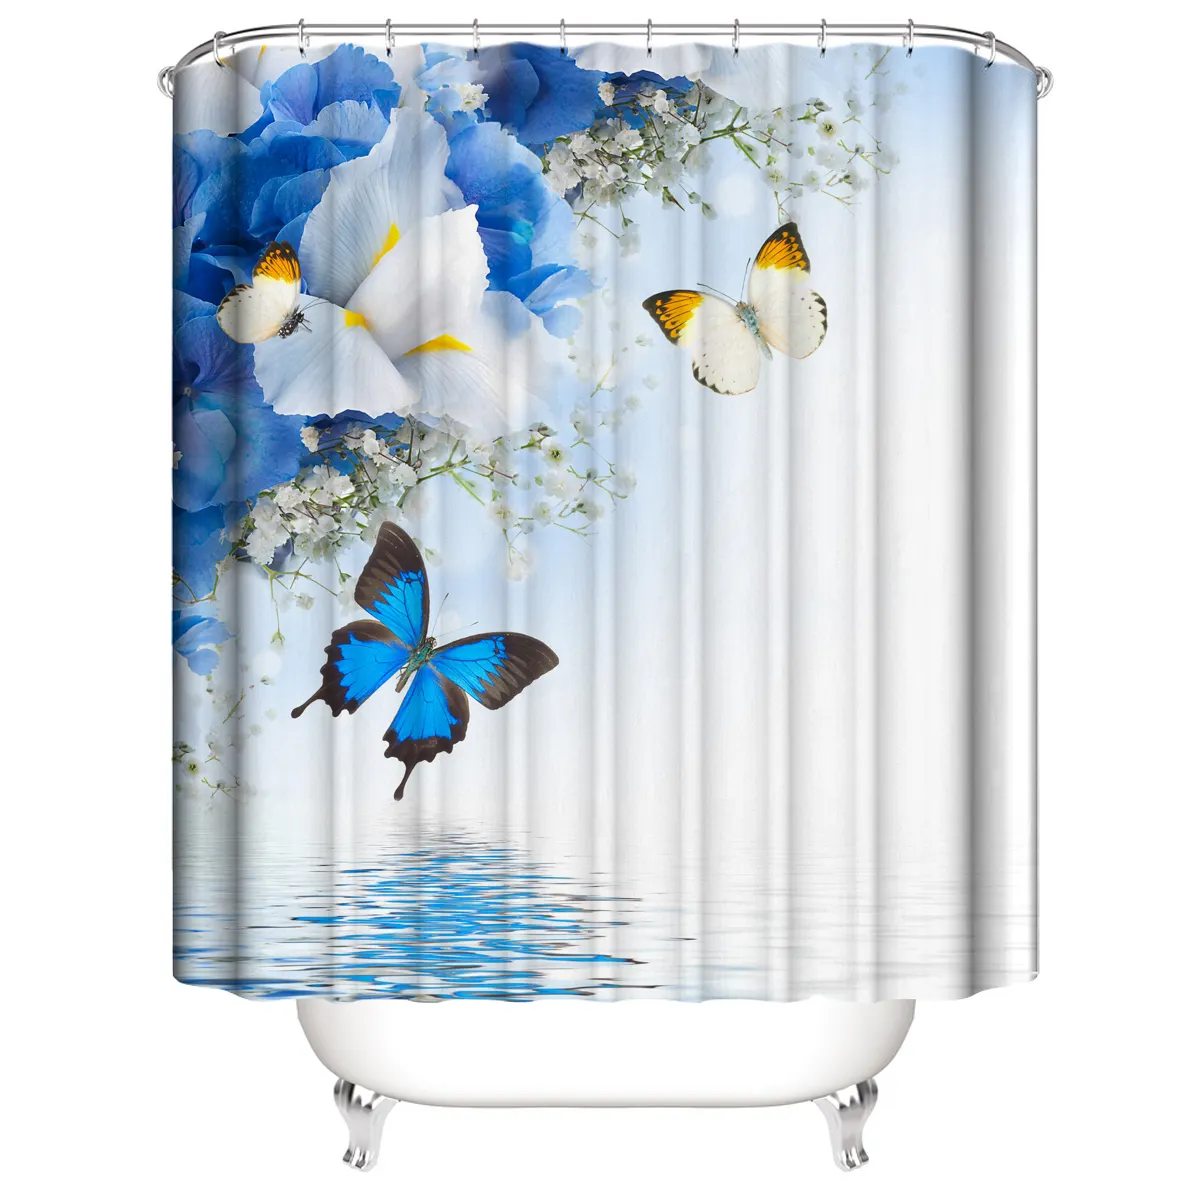 Yeni tasarım 3D baskı kelebek serisi özelleştirilmiş benzersiz duş banyo perdesi dekorasyon